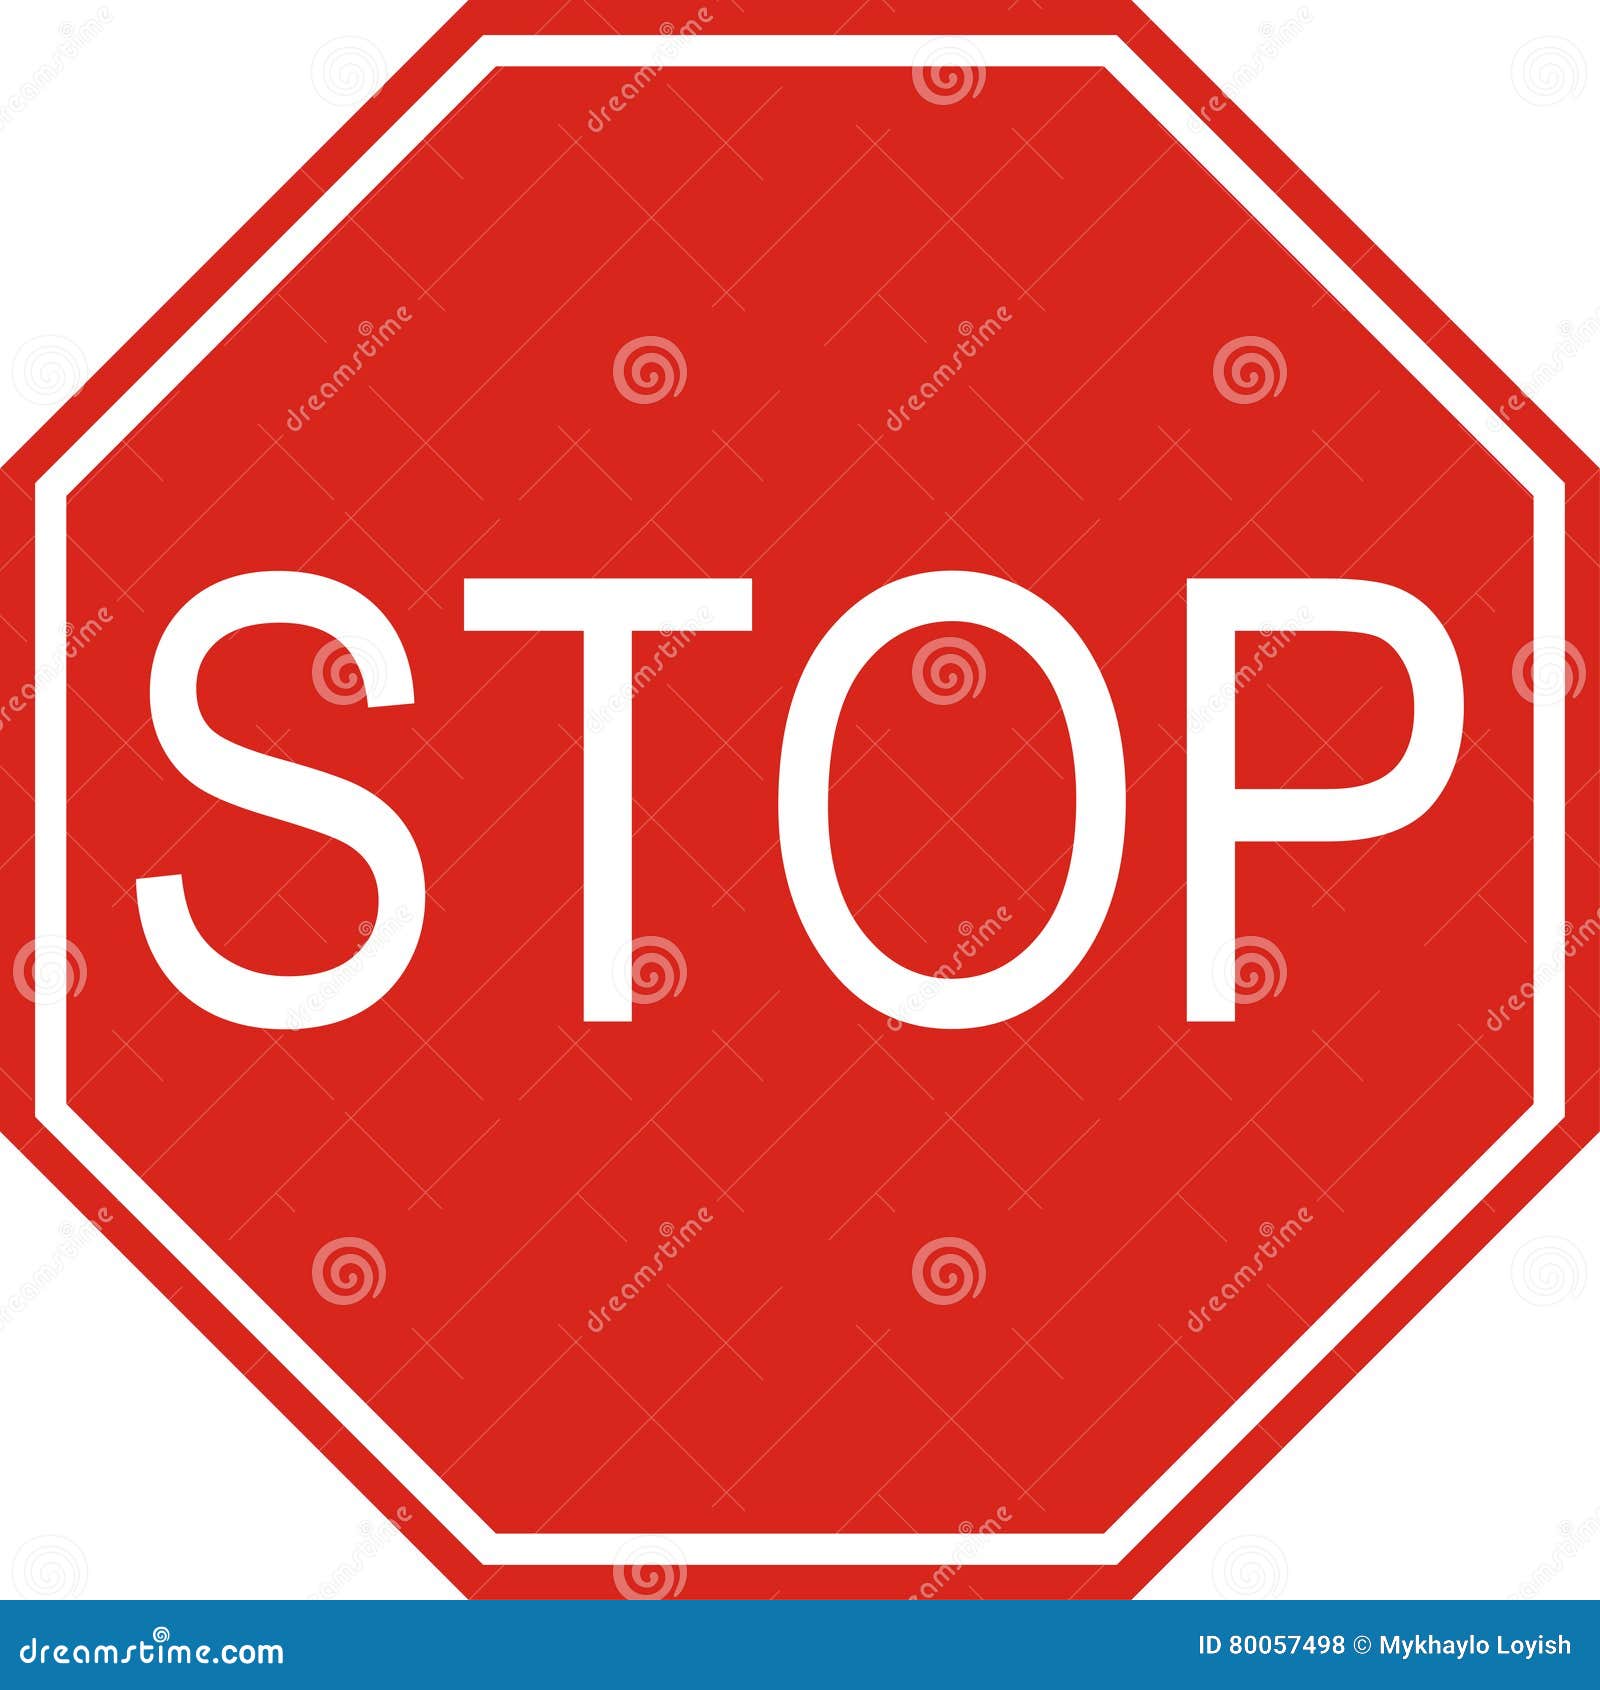 Знак stop. Дорожный знак стоп. Железнодорожный знак стоп. Знак стоп дорожный знак. Стоп вправо